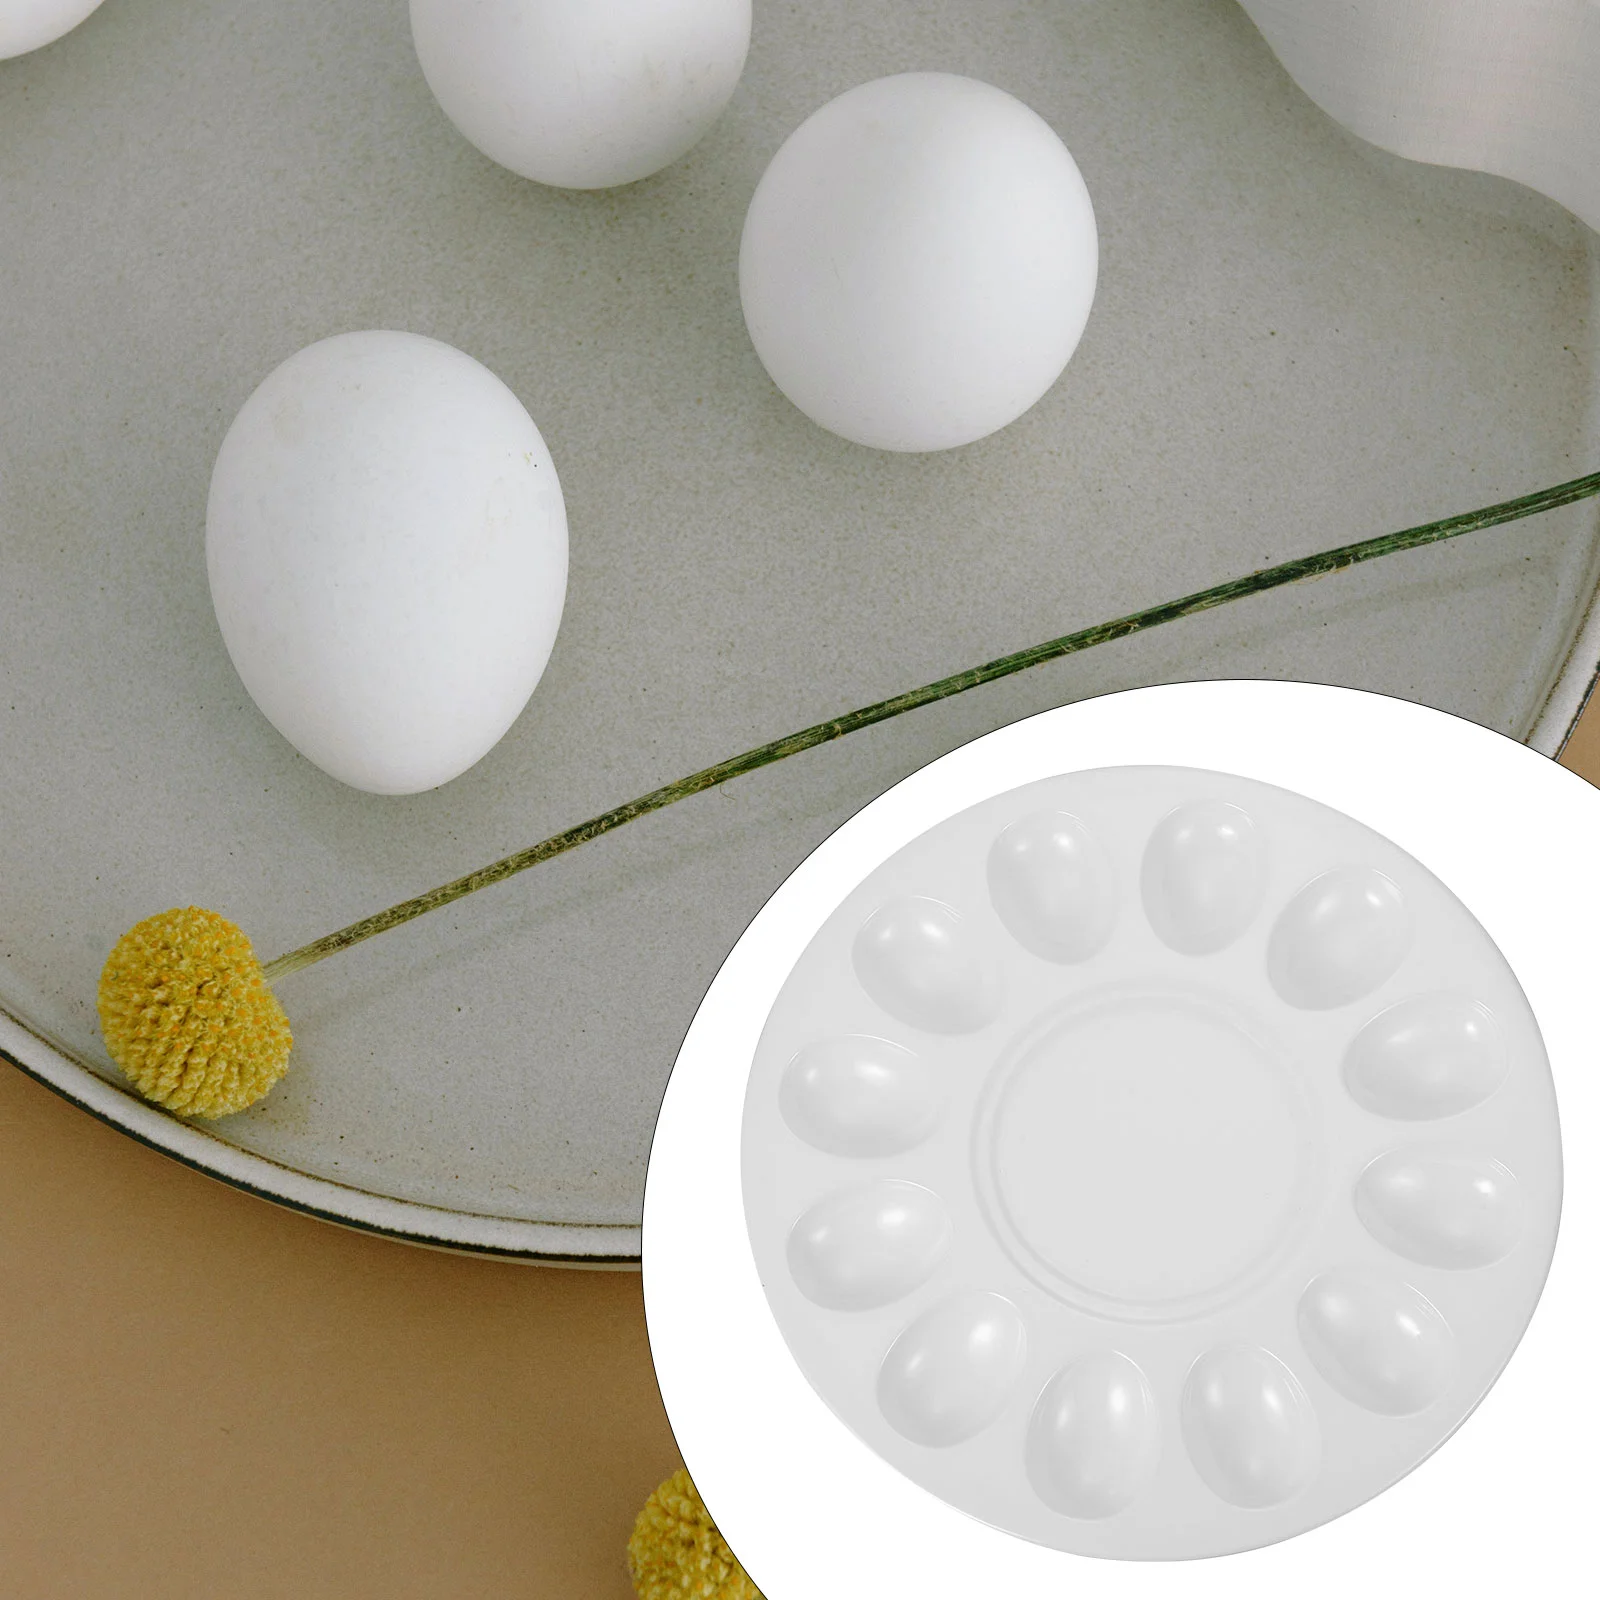 

Deviled Egg Platter Tray Holds 12 Eggs Sleek Melamine Dish Shrimp Paste Plate Display Holder Egg Tray Egg Plate for Serving